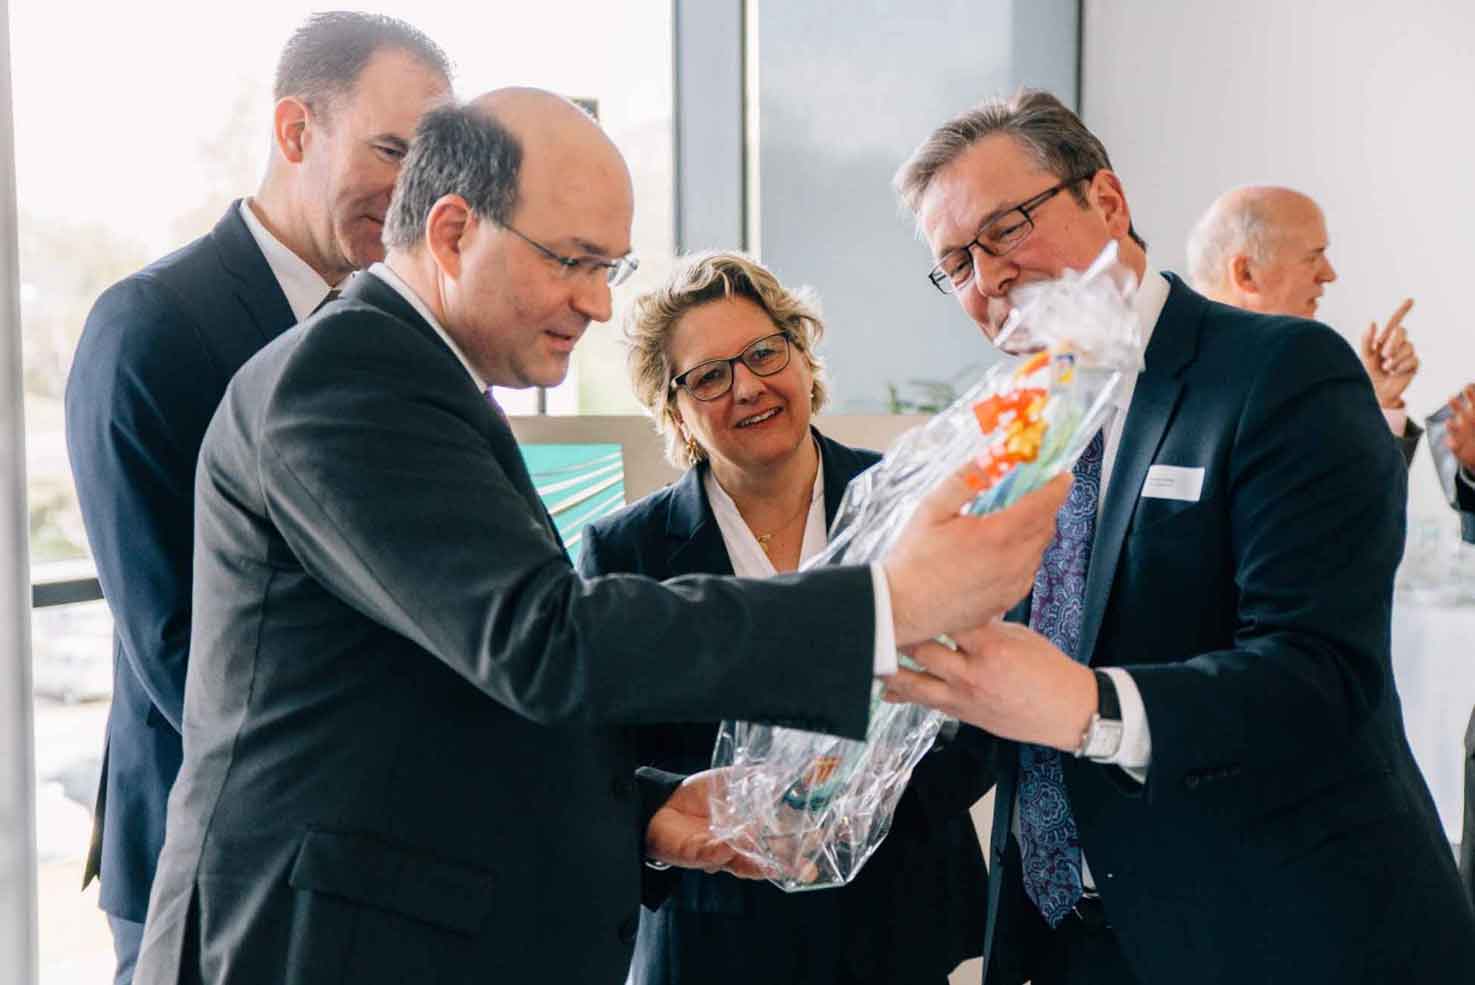 Auch die Stadt Paderborn freut sich über das neue Fraunhofer-Institut. Bürgermeister Michael Dreier überreicht eine Illustration, die das bekannte Paderborner Wahrzeichen zeigt – das Drei-Hasen-Fenster.